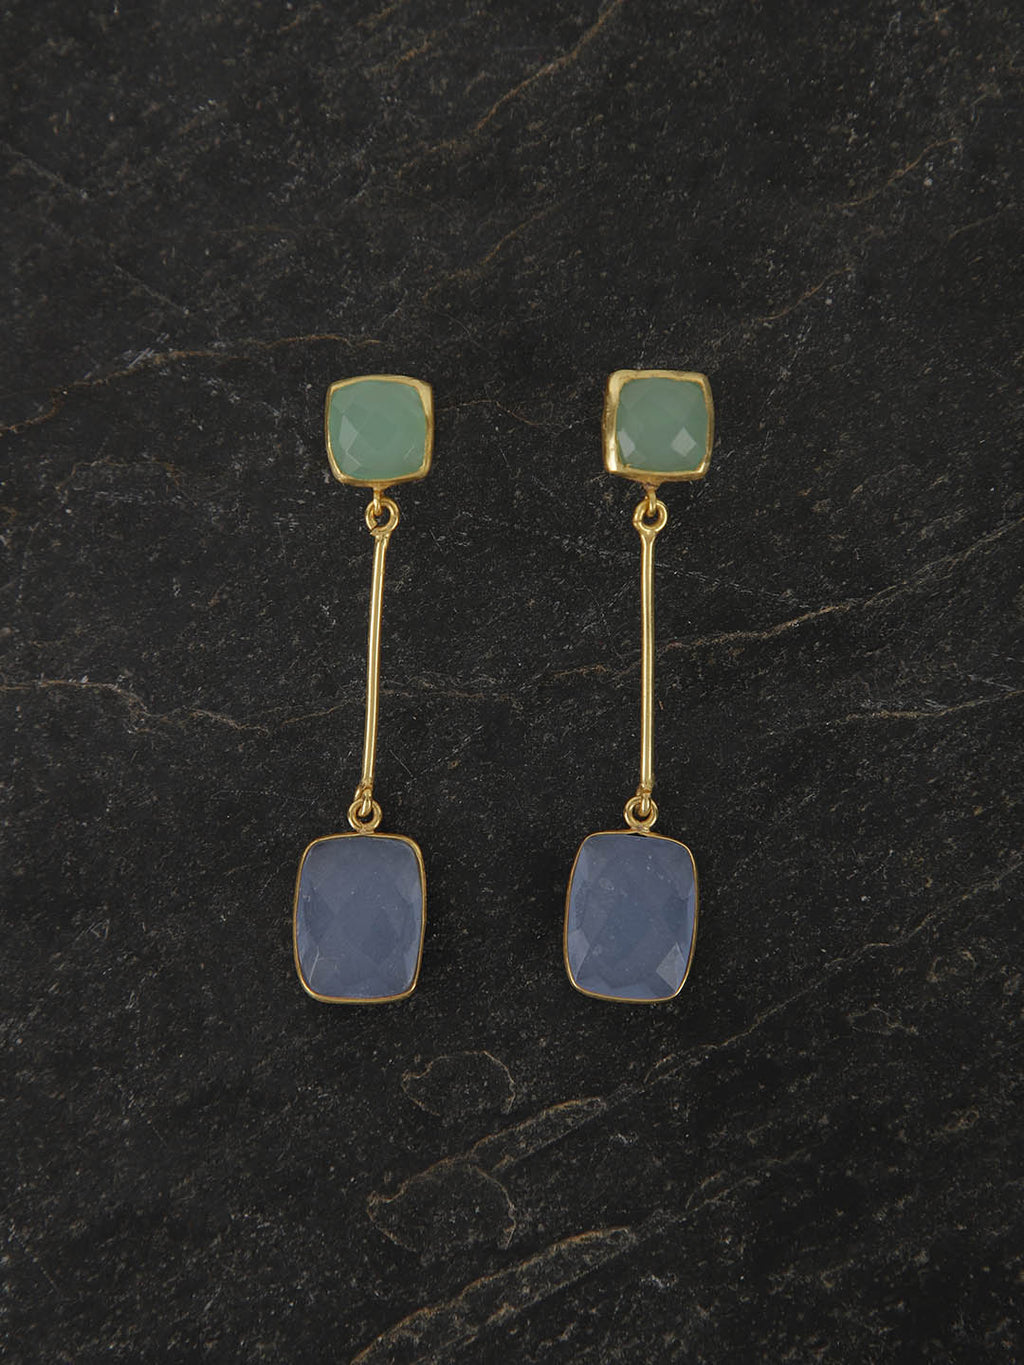 Gold Plated Multistone Drop Danglers - Lime, Blue Chalcedony, Earrings - Shopberserk